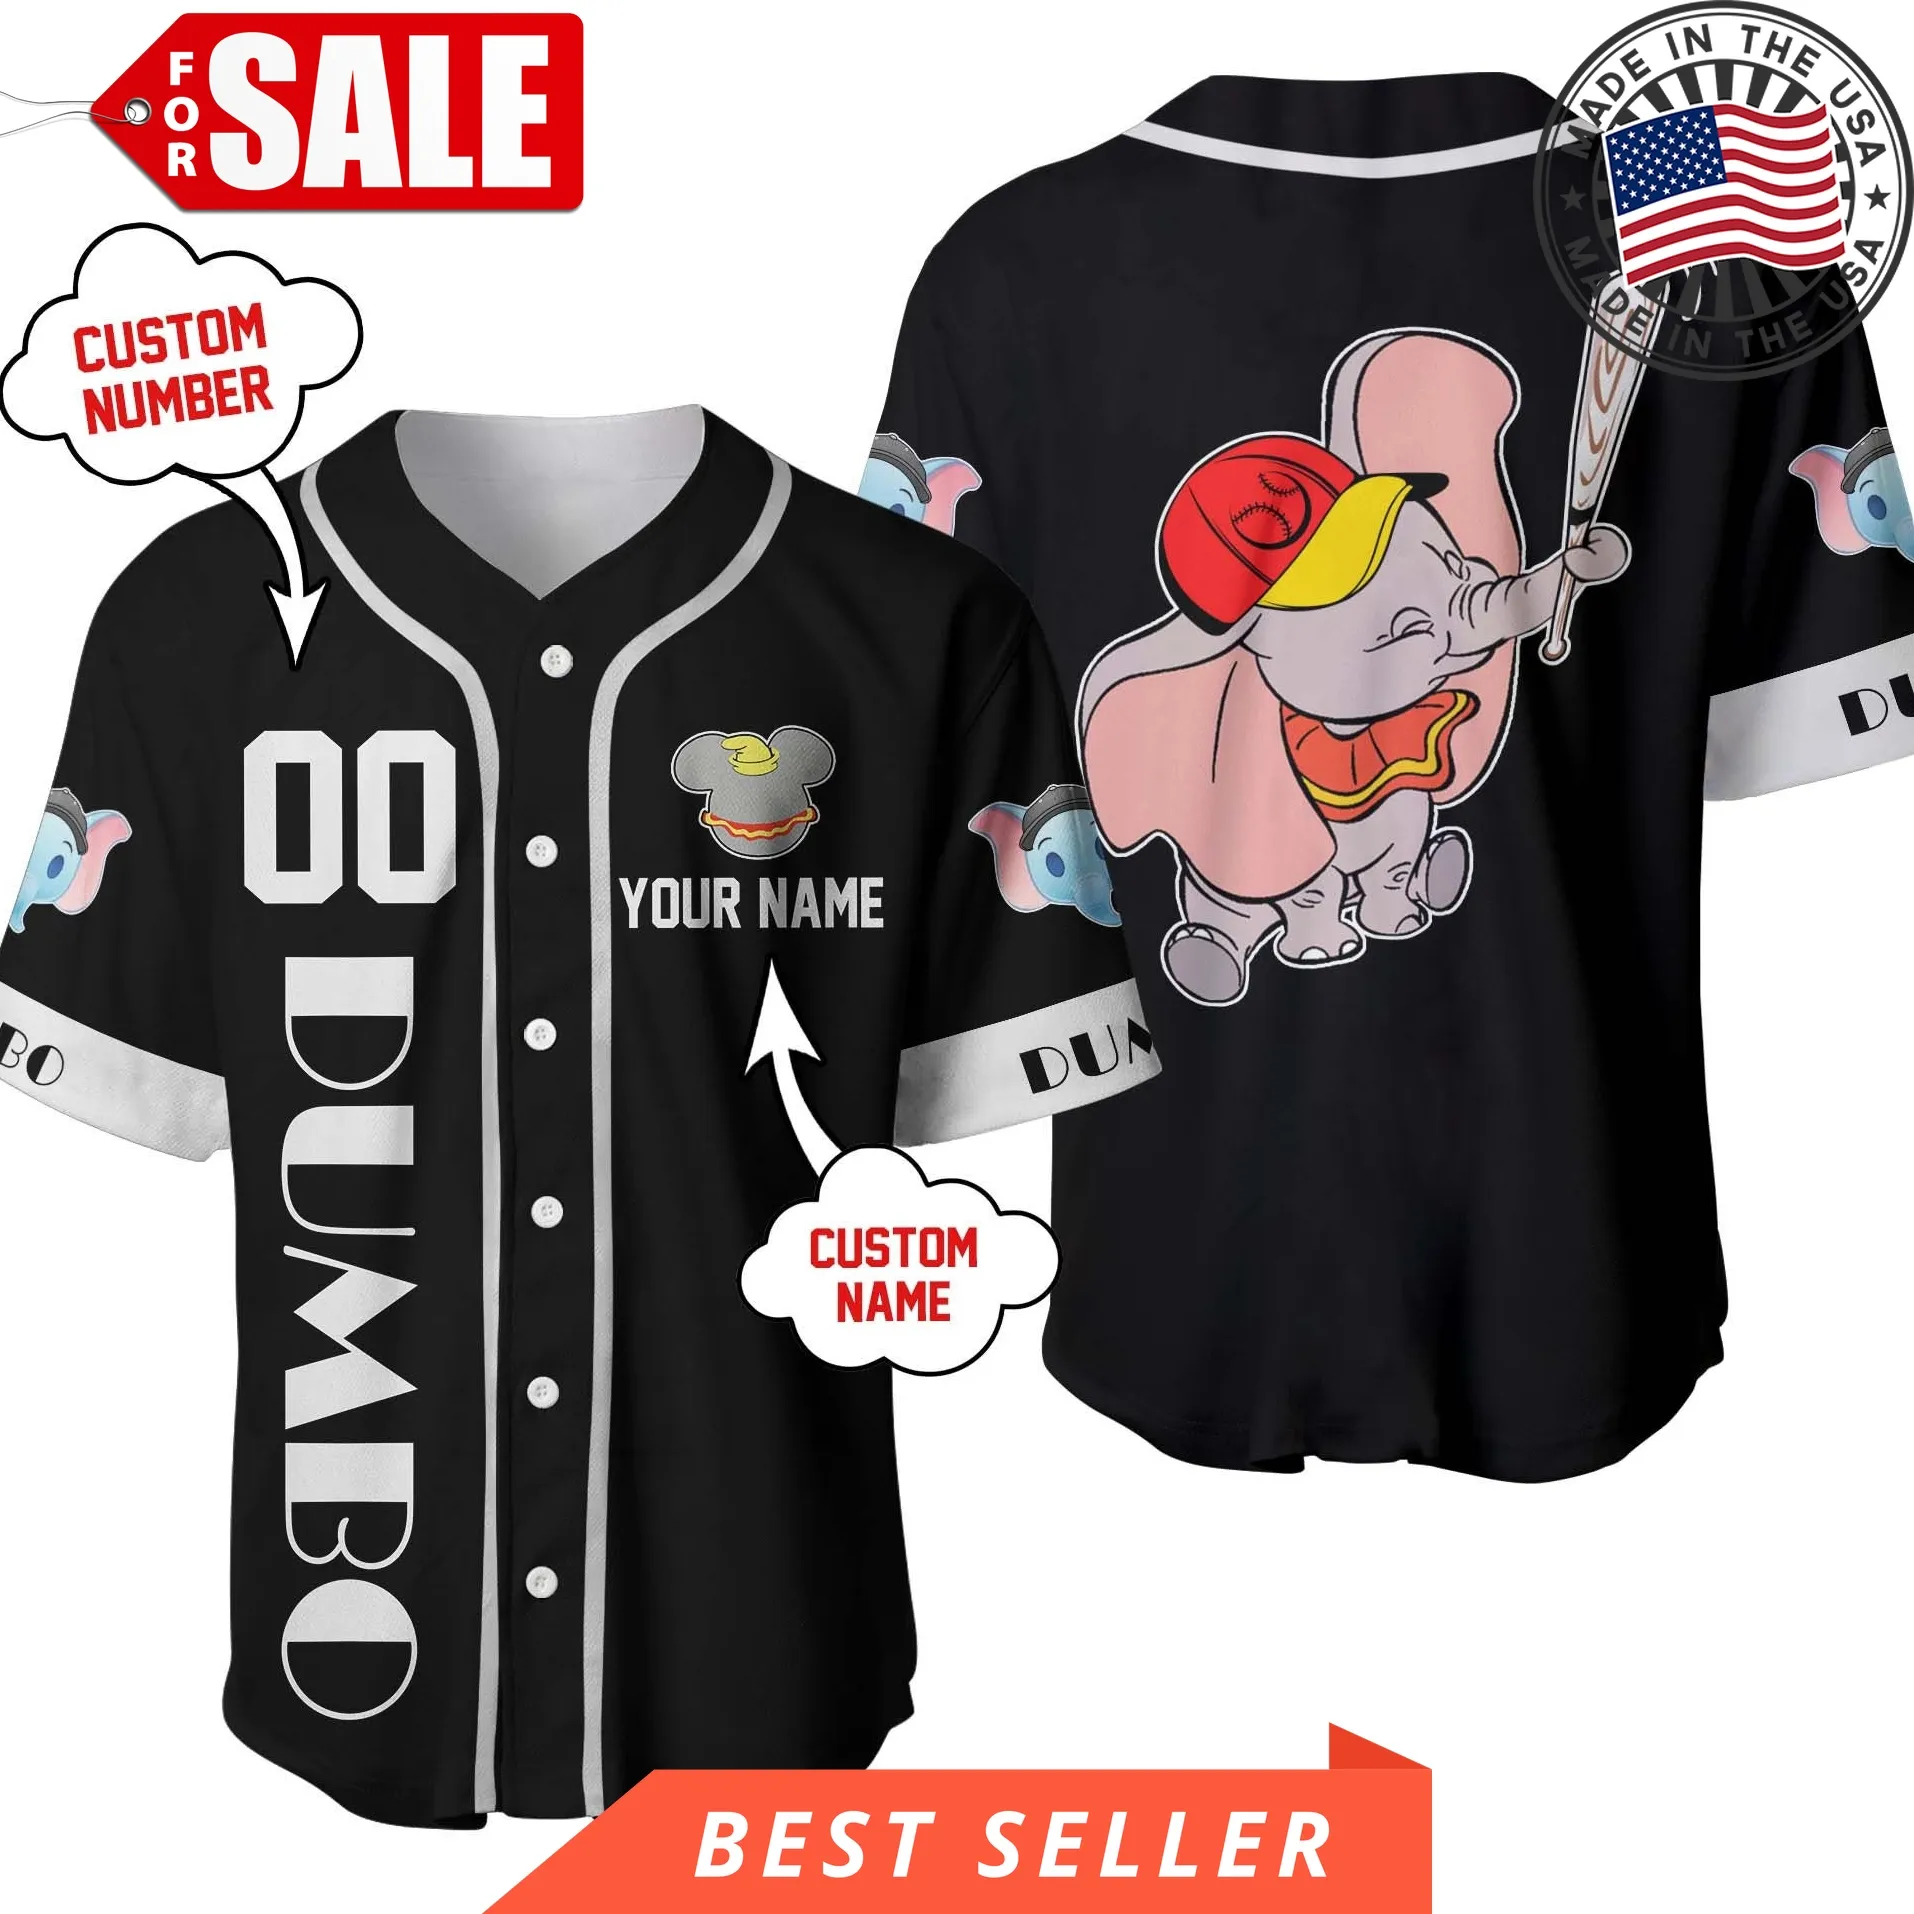 Dumbo Elephant Black White Disney Personalized Unisex Cartoon Custom Baseball Jersey